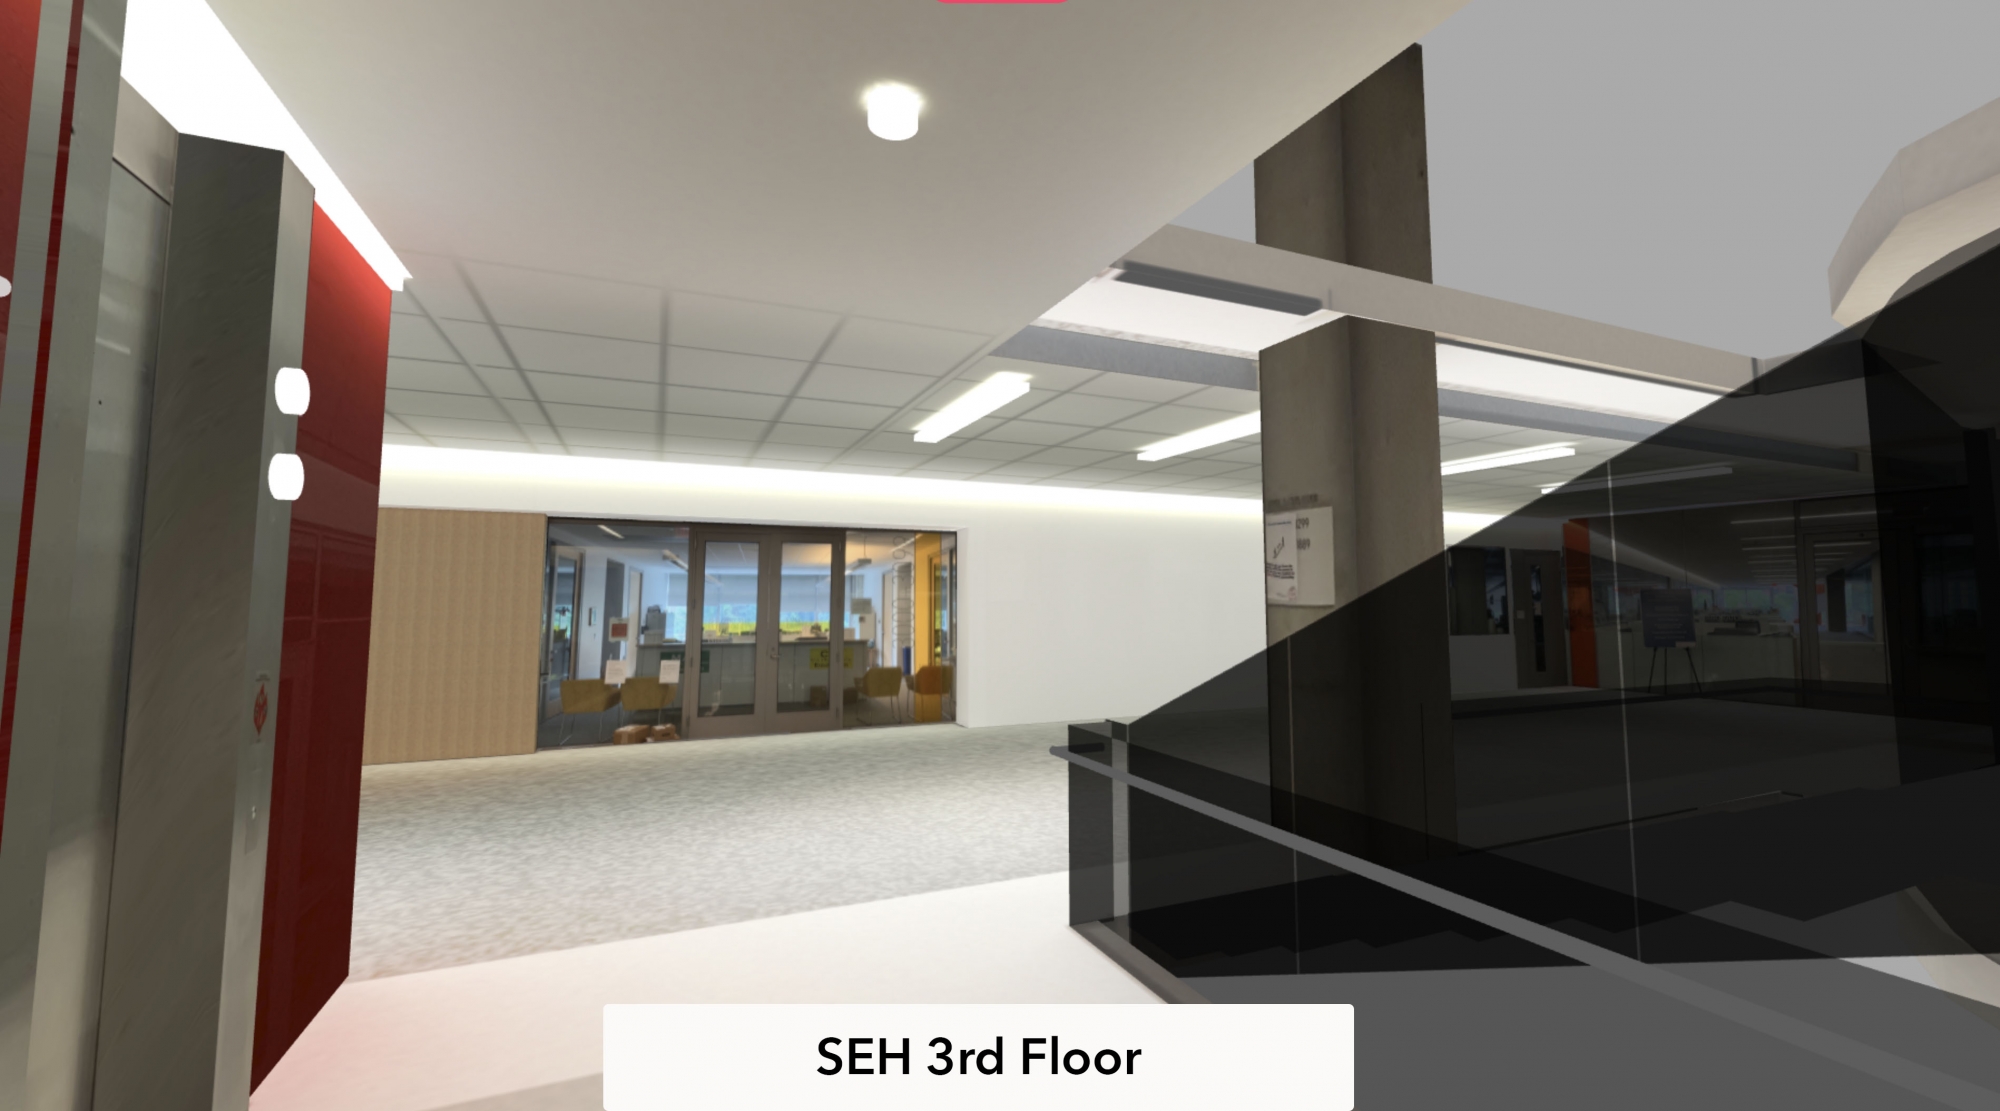 seh 3rd floor virtual room